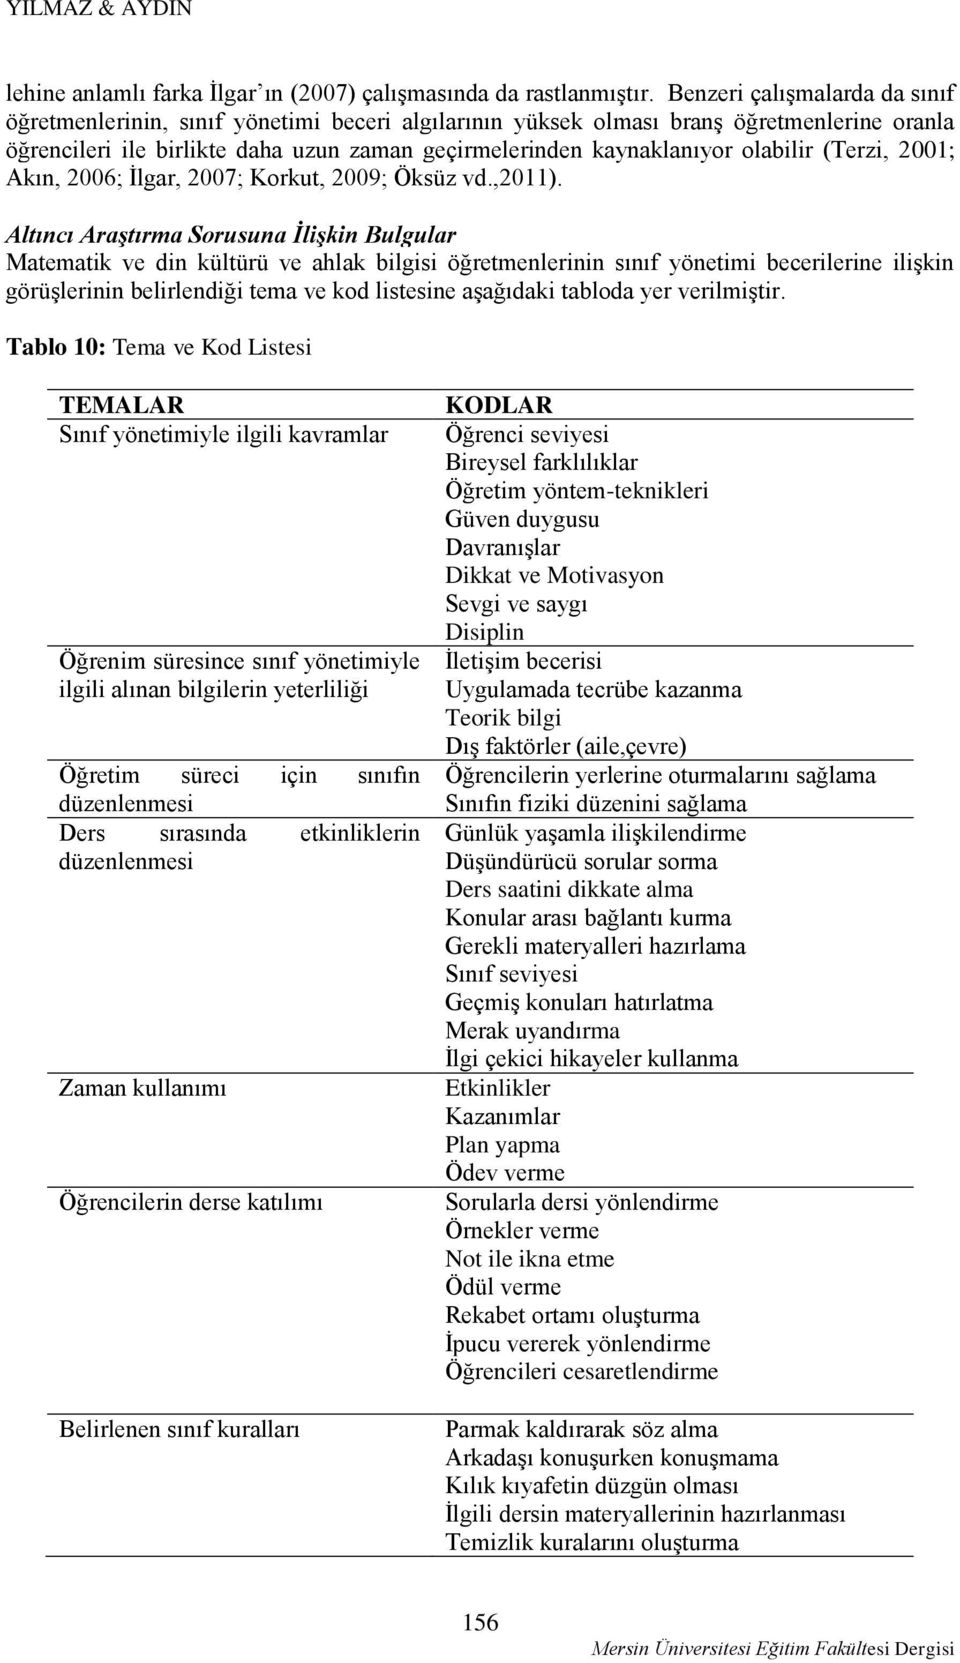 olabilir (Terzi, 2001; Akın, 2006; İlgar, 2007; Korkut, 2009; Öksüz vd.,2011).